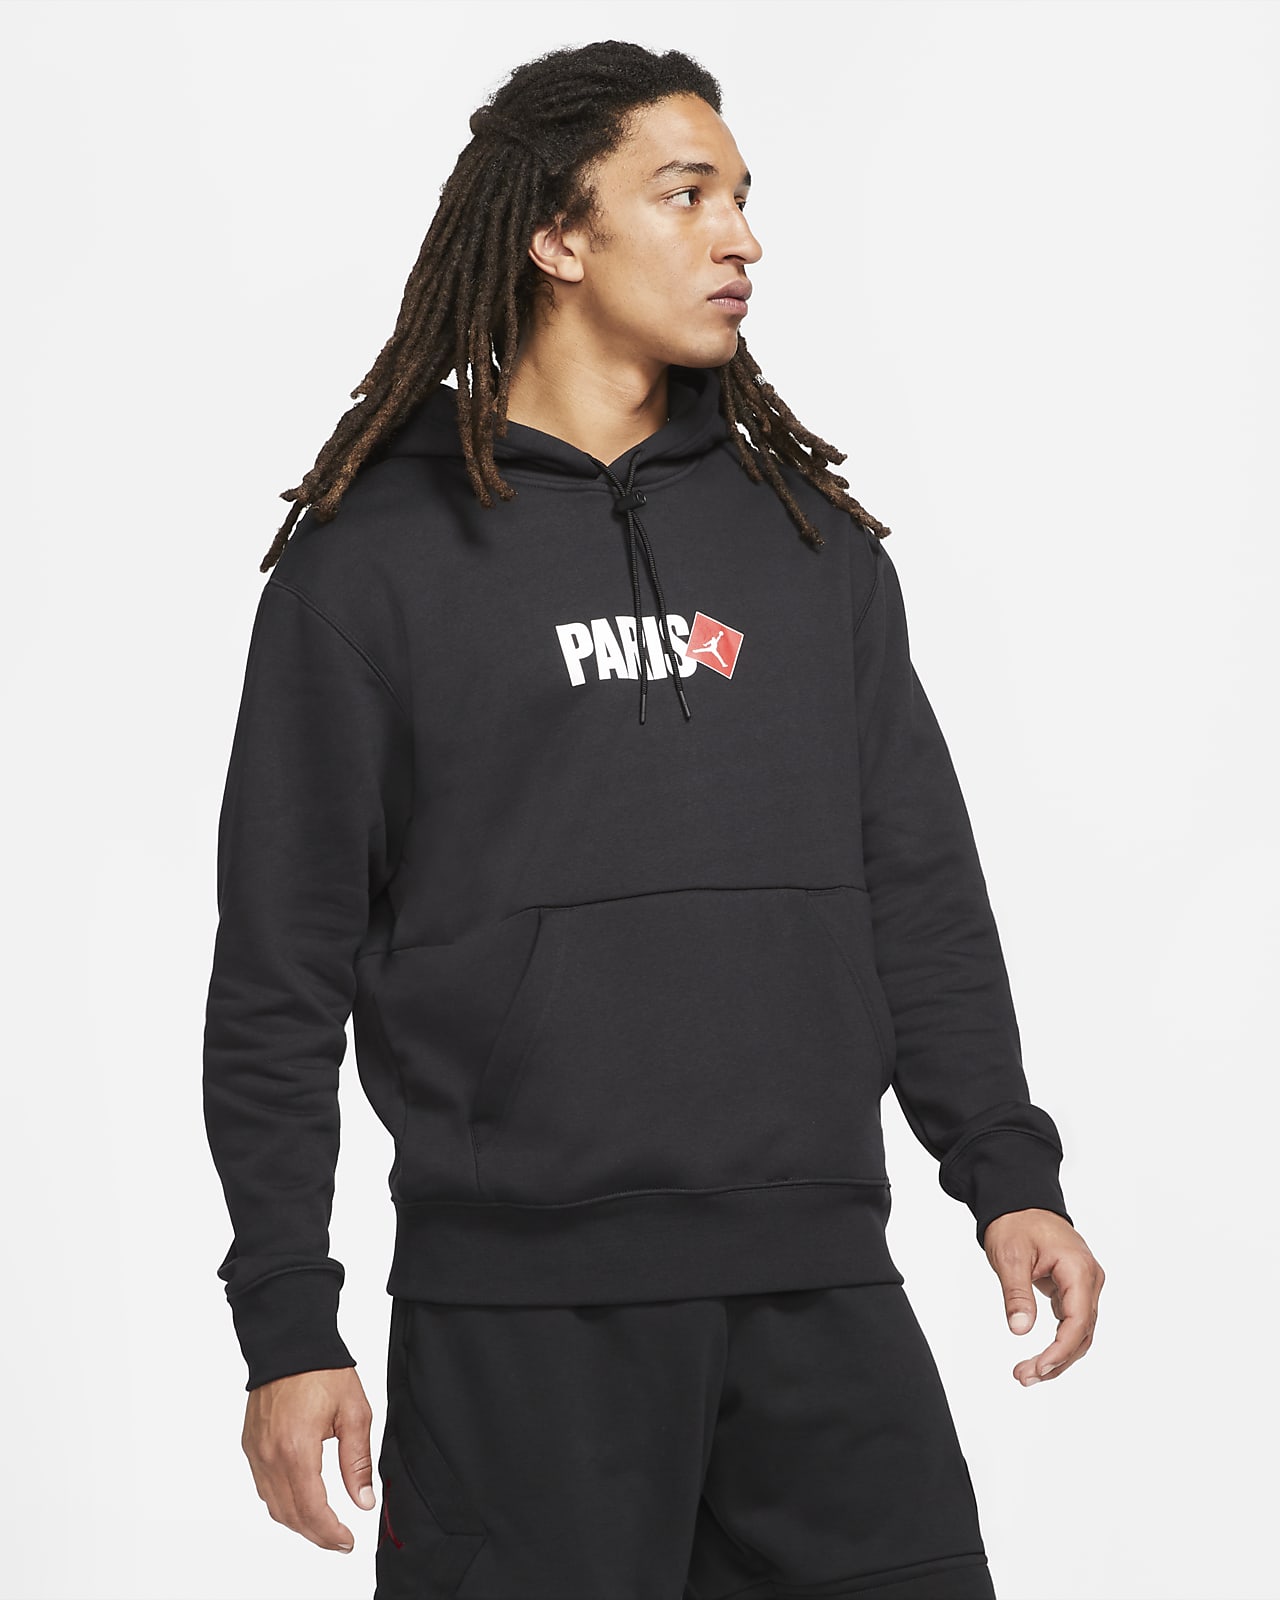 Jordan Paris Men's Pullover Hoodie. Nike BG